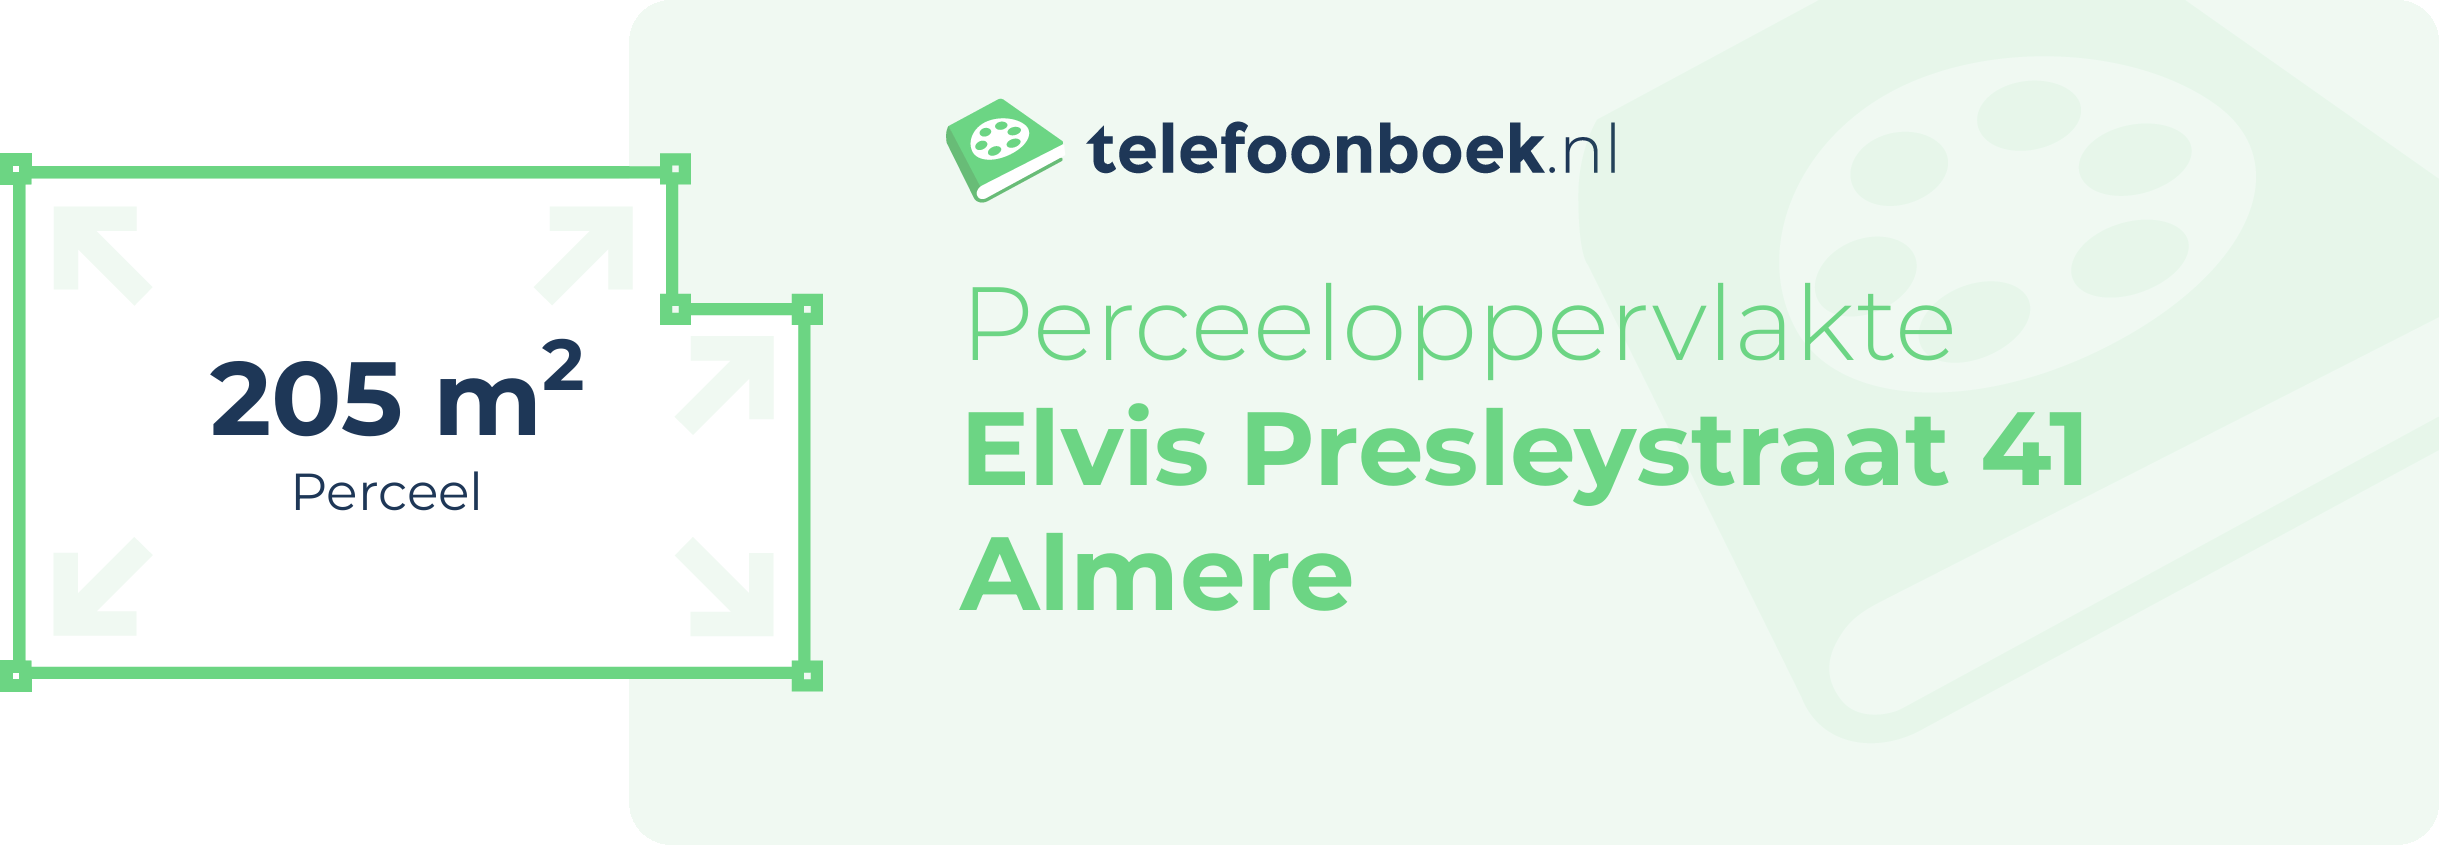 Perceeloppervlakte Elvis Presleystraat 41 Almere